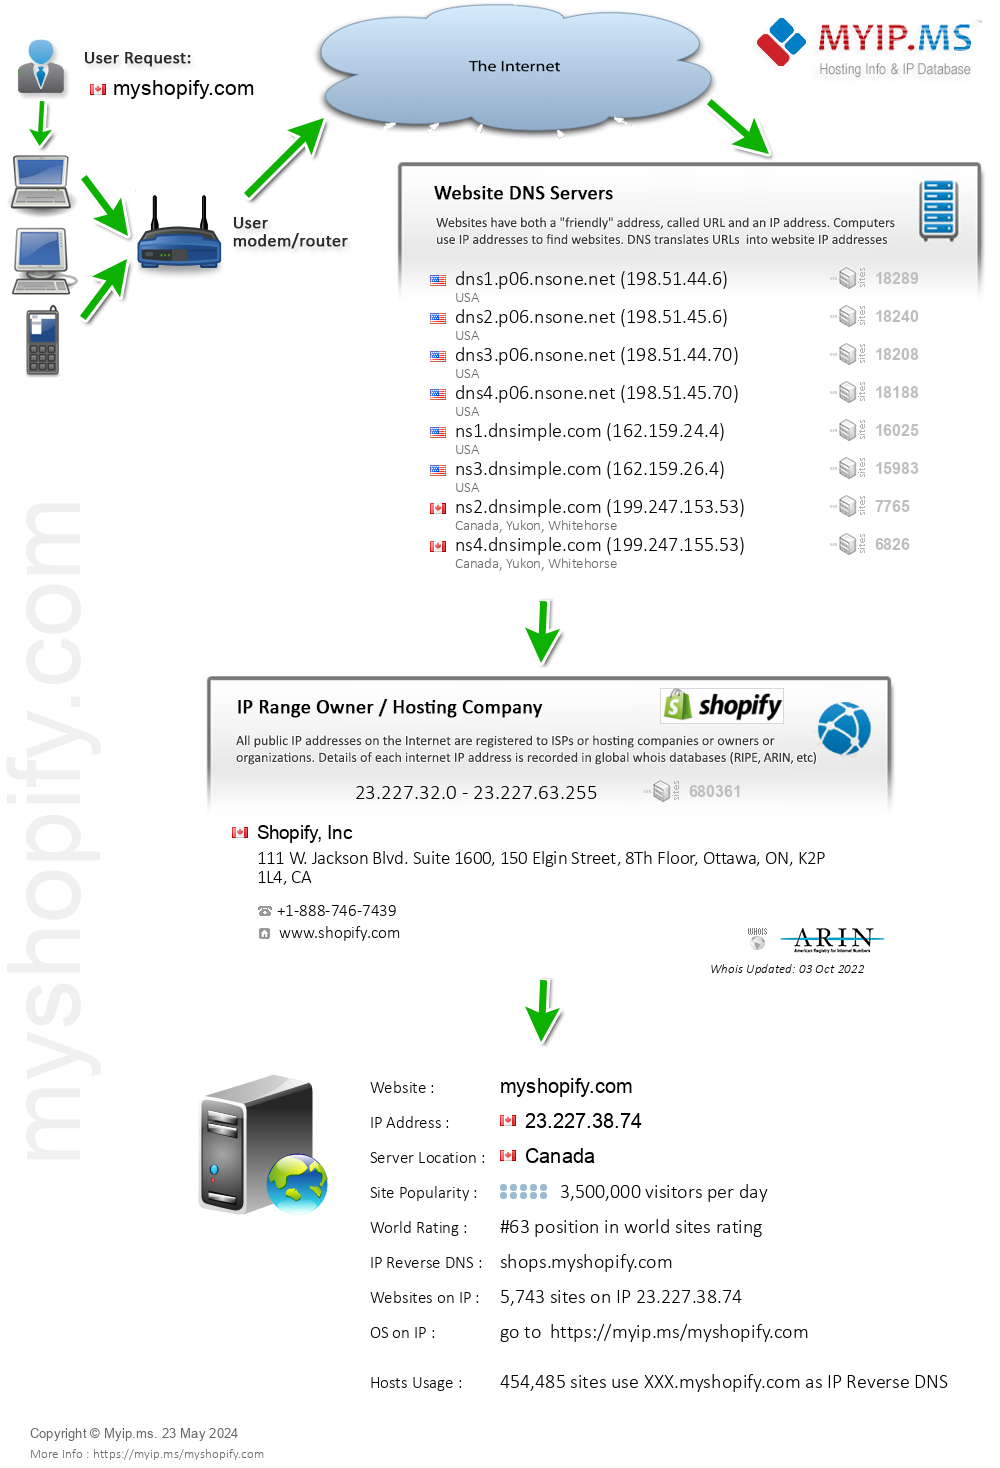 Myshopify.com - Website Hosting Visual IP Diagram